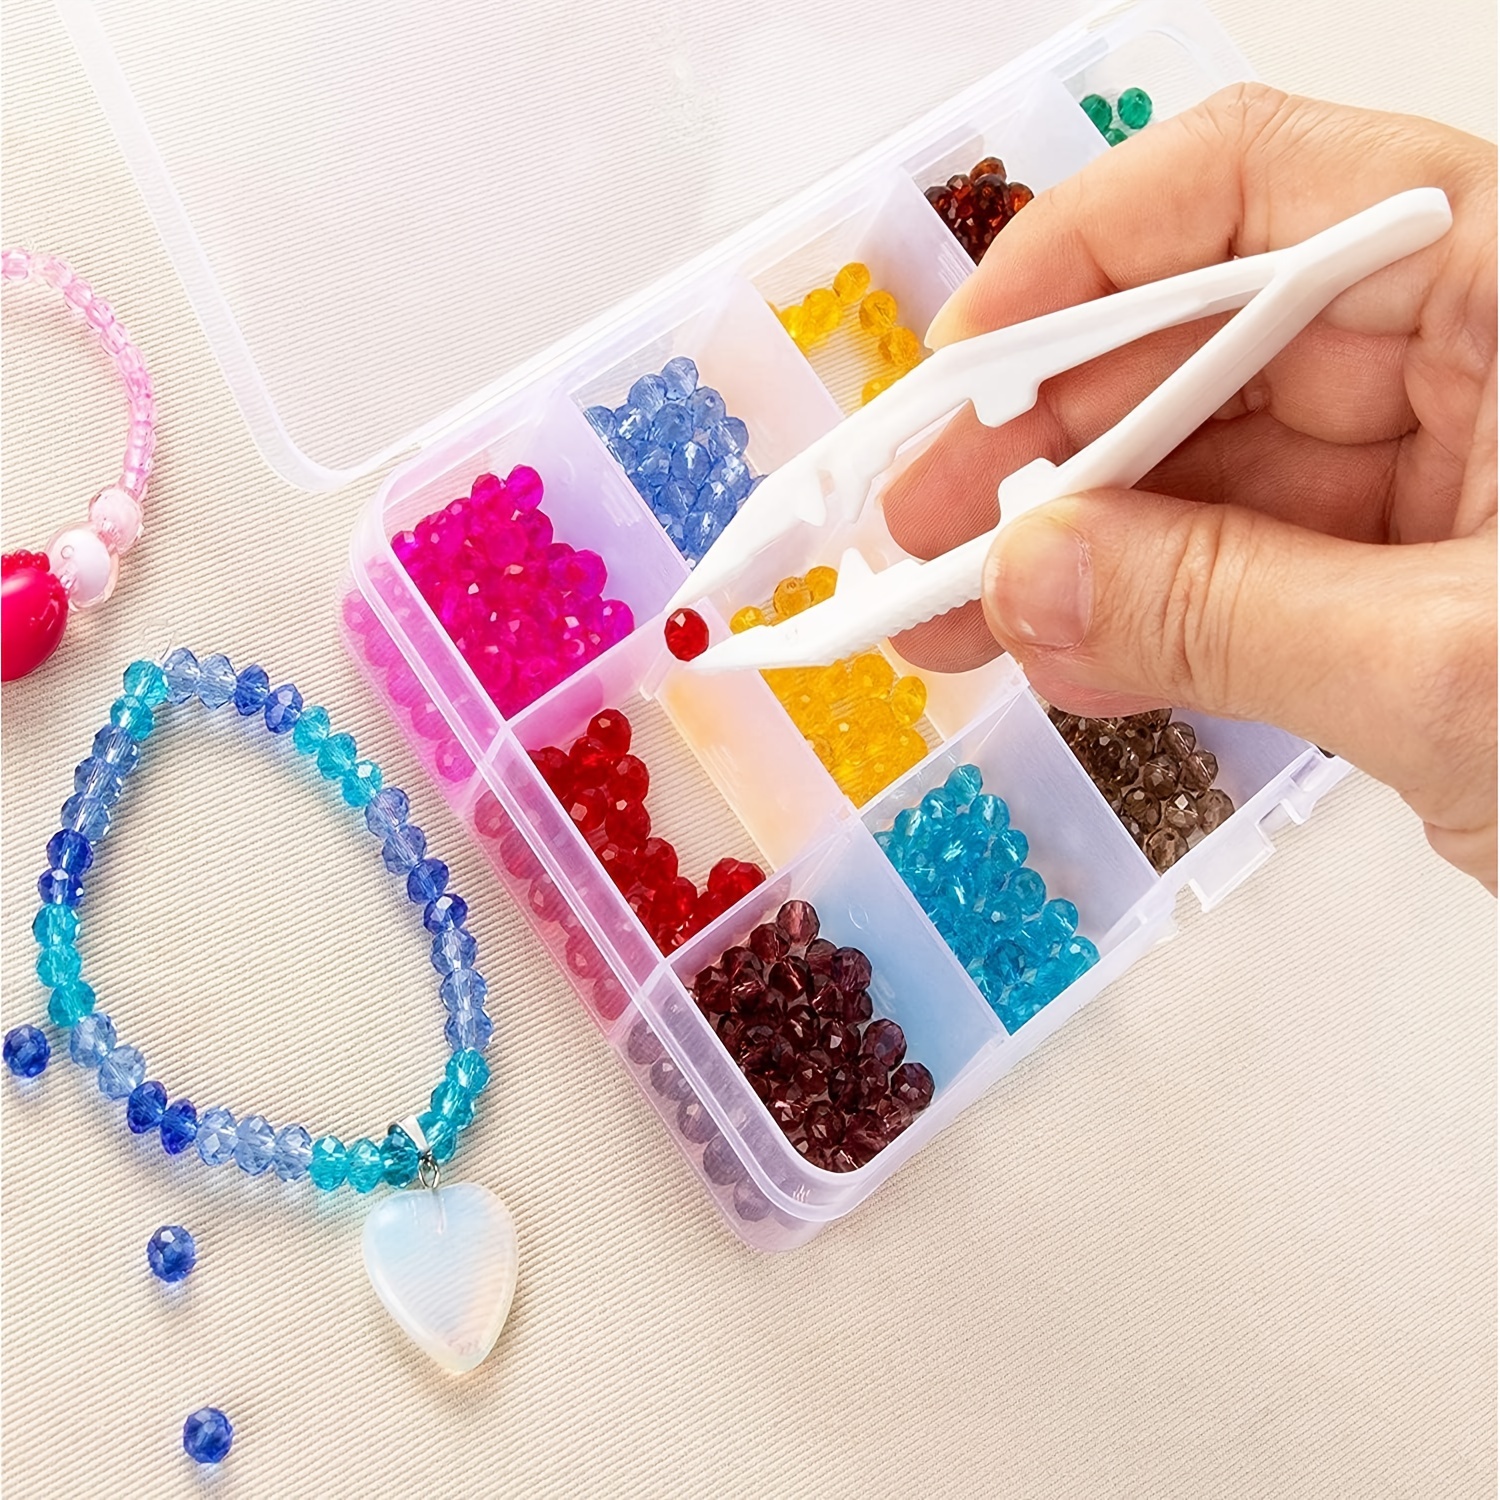 15 PCS Plastic Tweezers 4 Inch Plastic Beads Tweezers Perler Bead